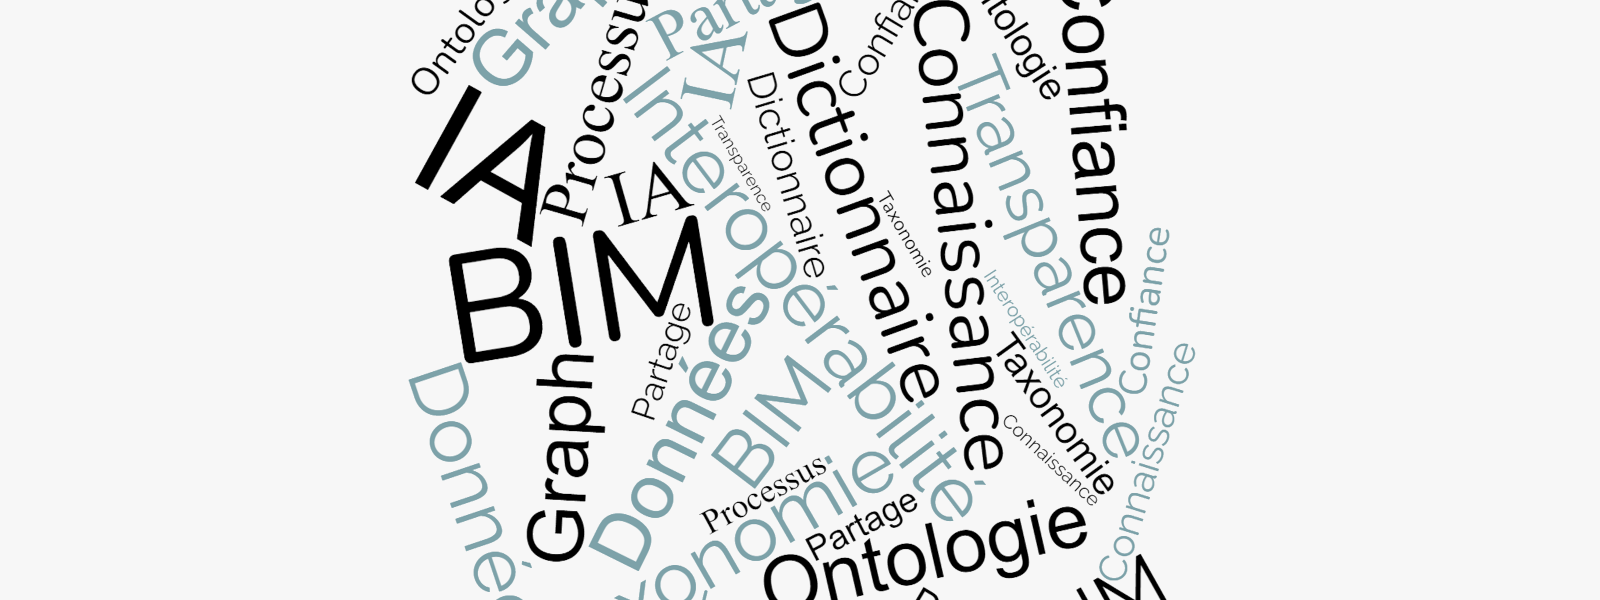 Dictionnaires de données et processus BIM : retours d’expériences et leçons apprises